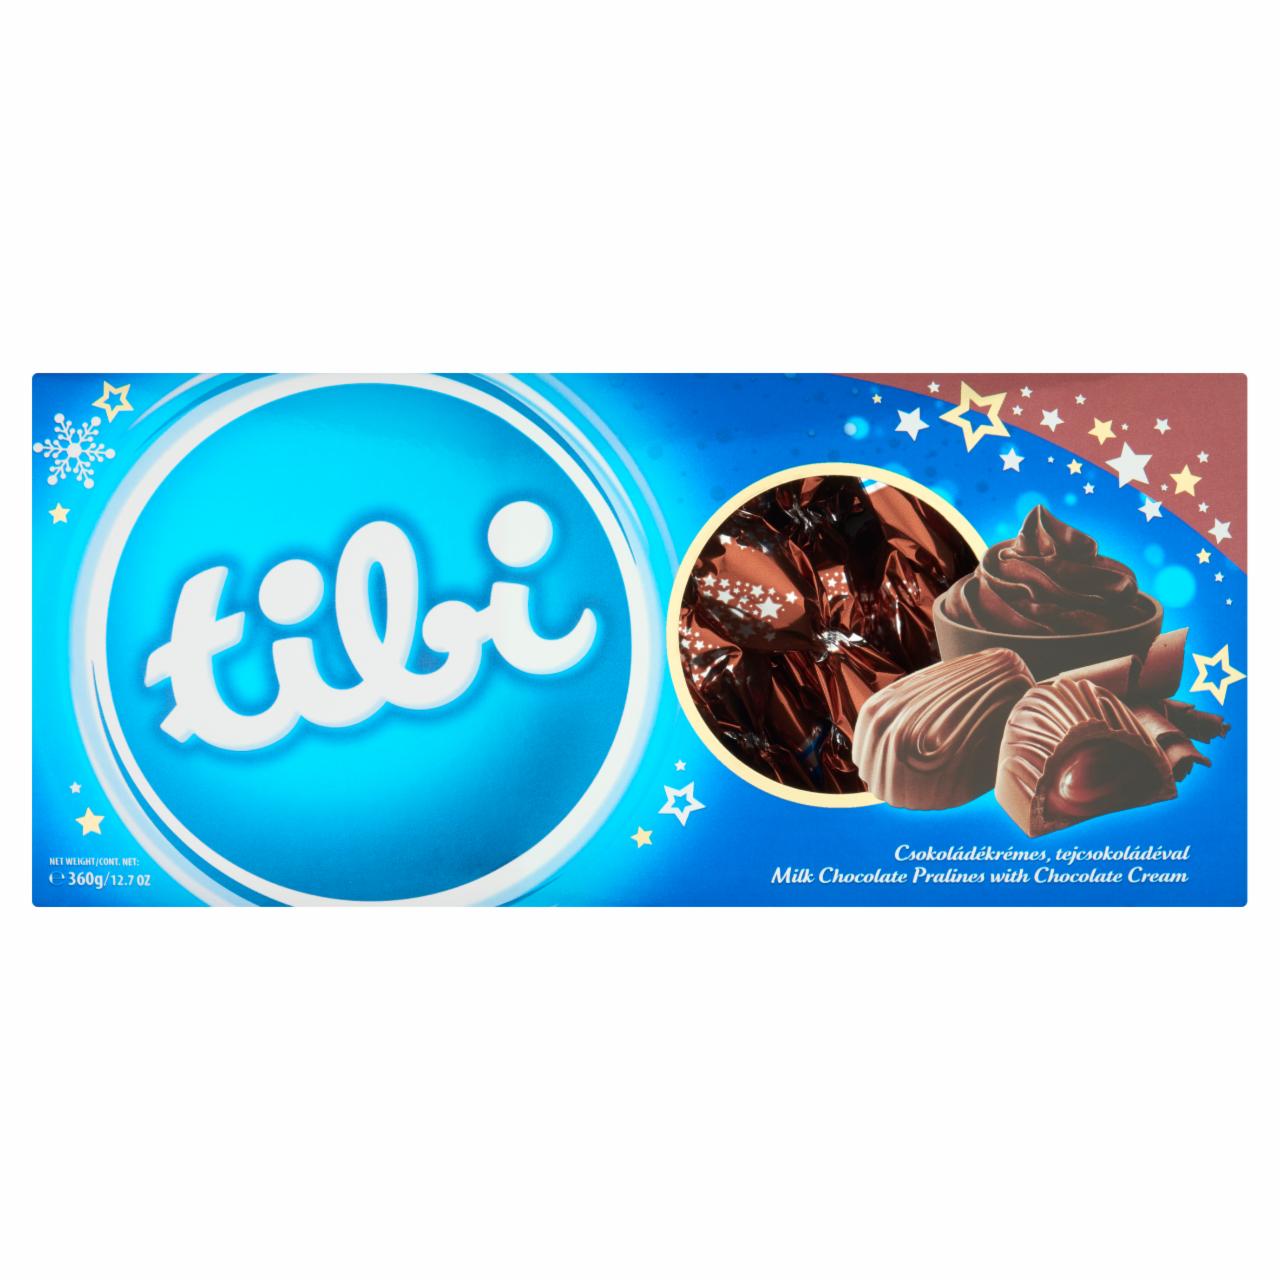 Képek - Tibi tejcsokoládé praliné szaloncukor csokoládé krémmel 360 g